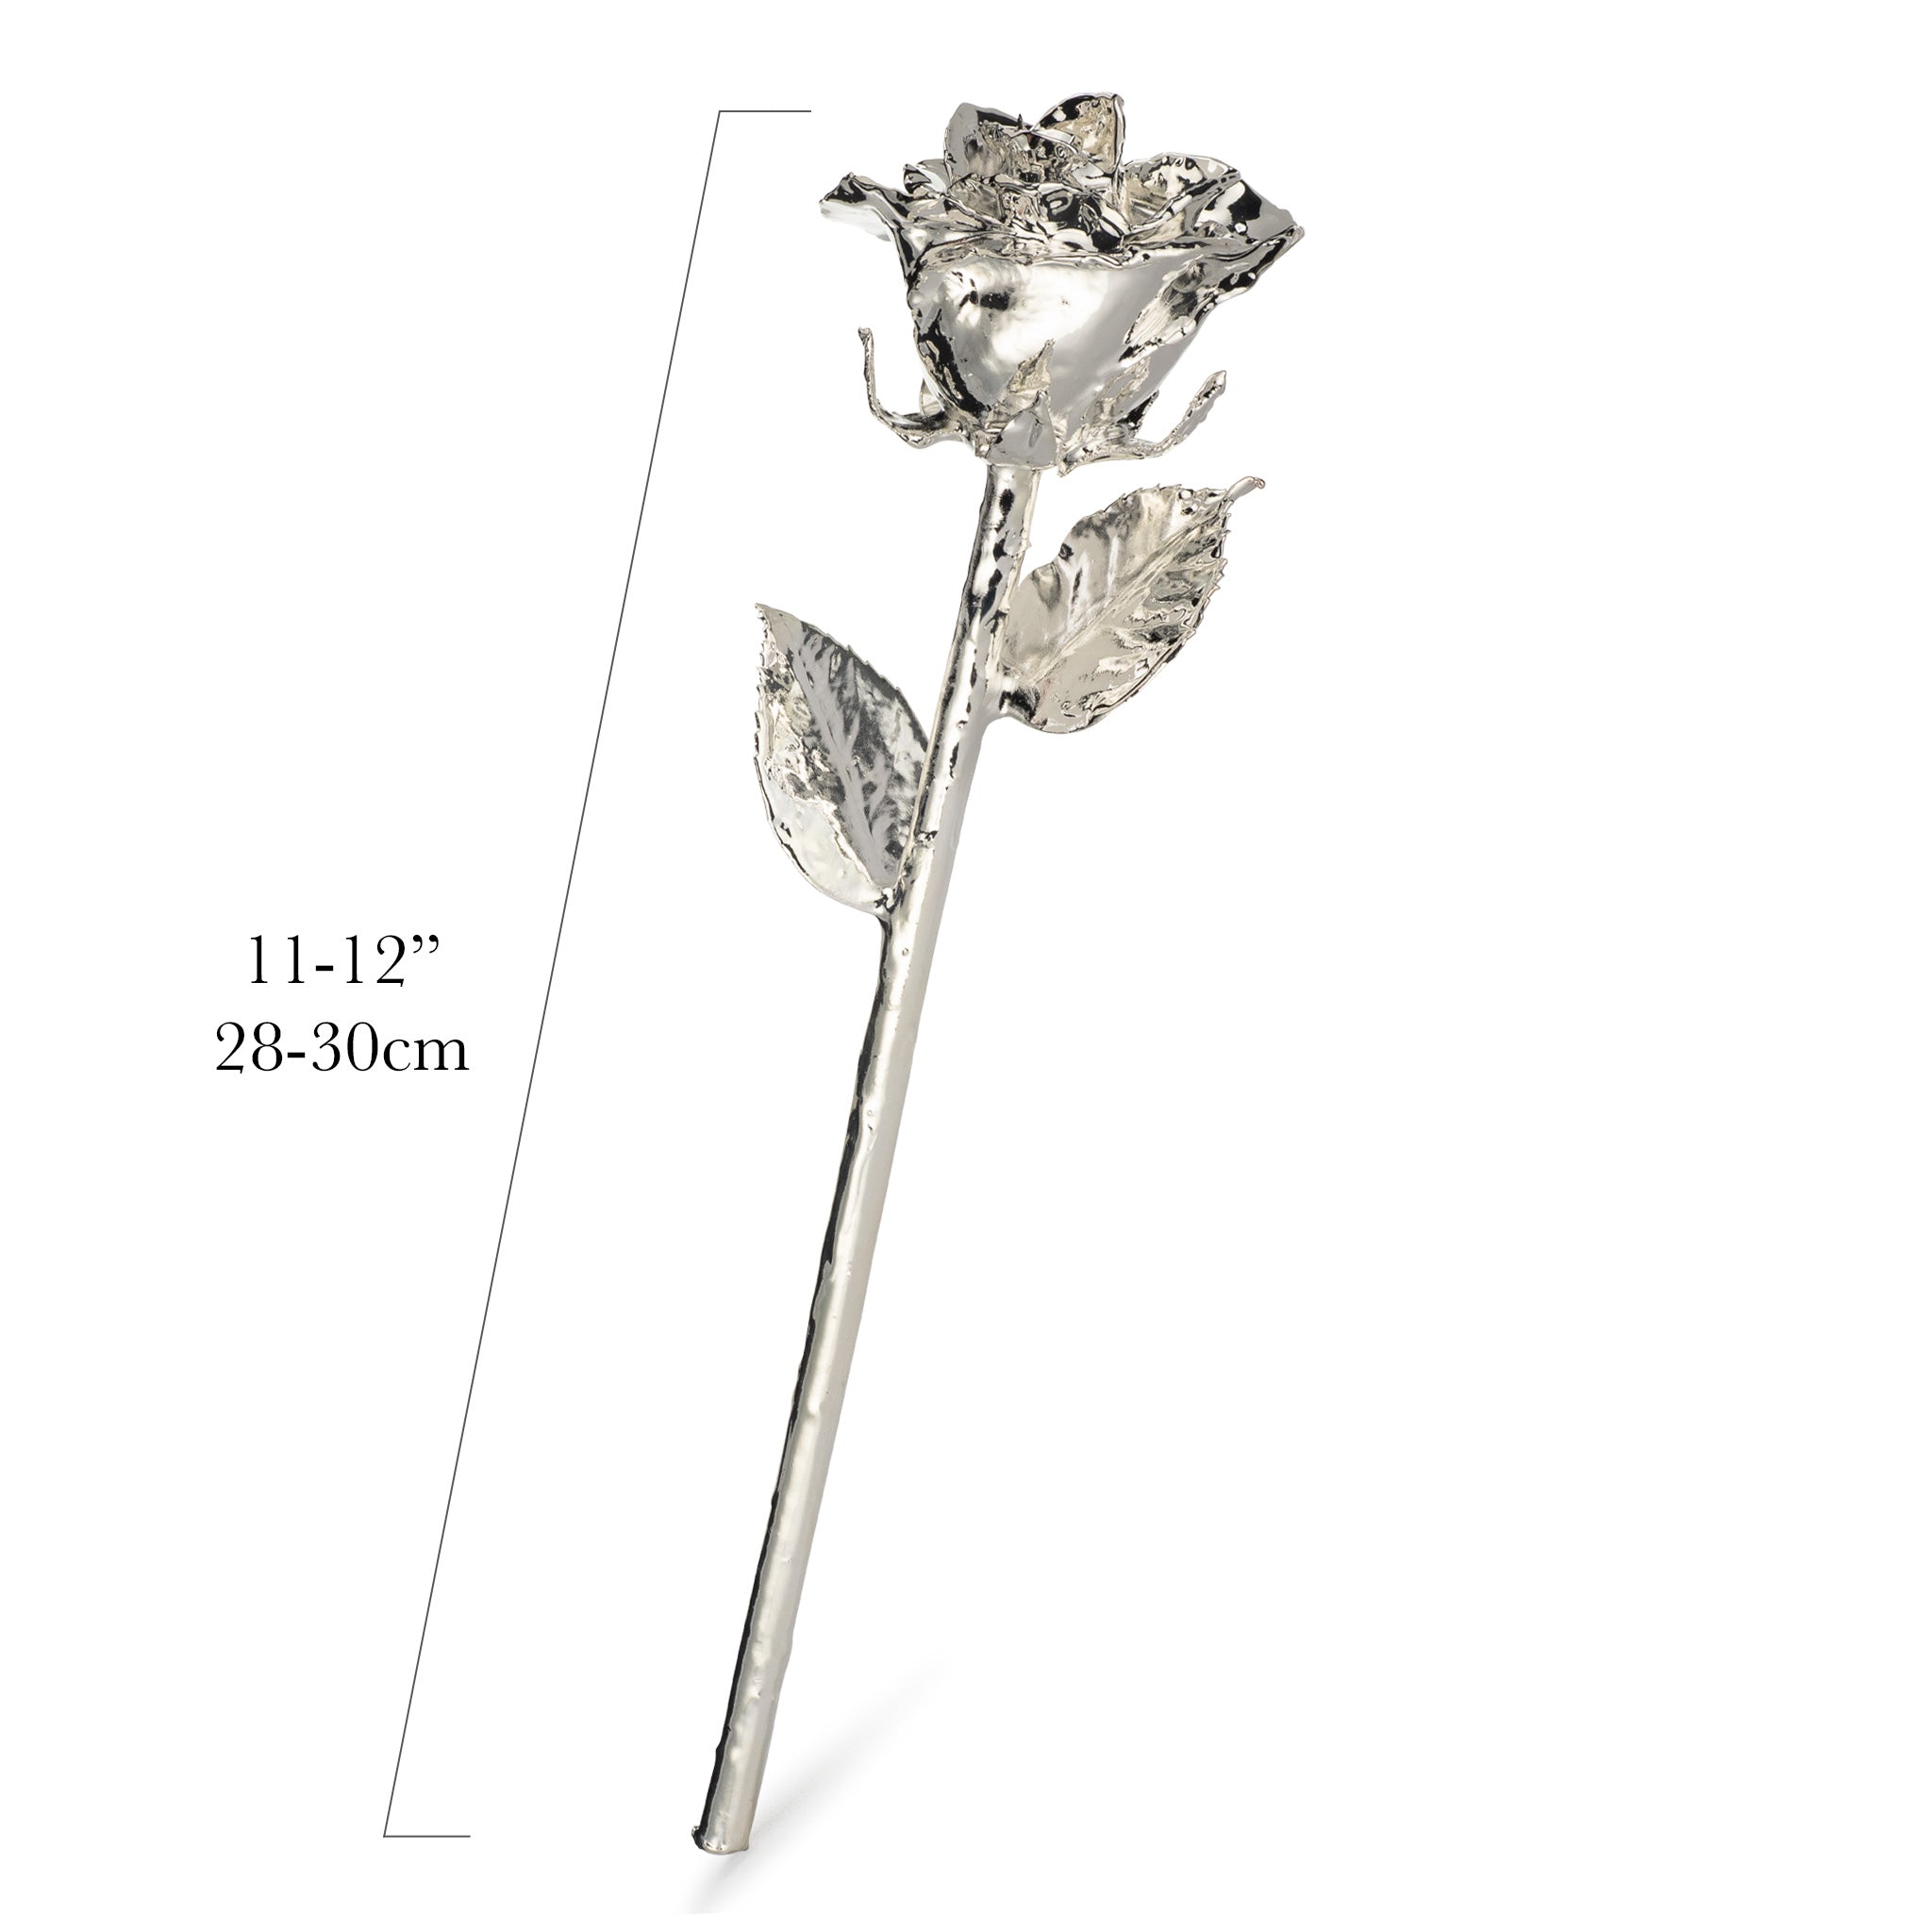 Forever Rose Bloom Box & Phantom Vase™ Combo (Silver)